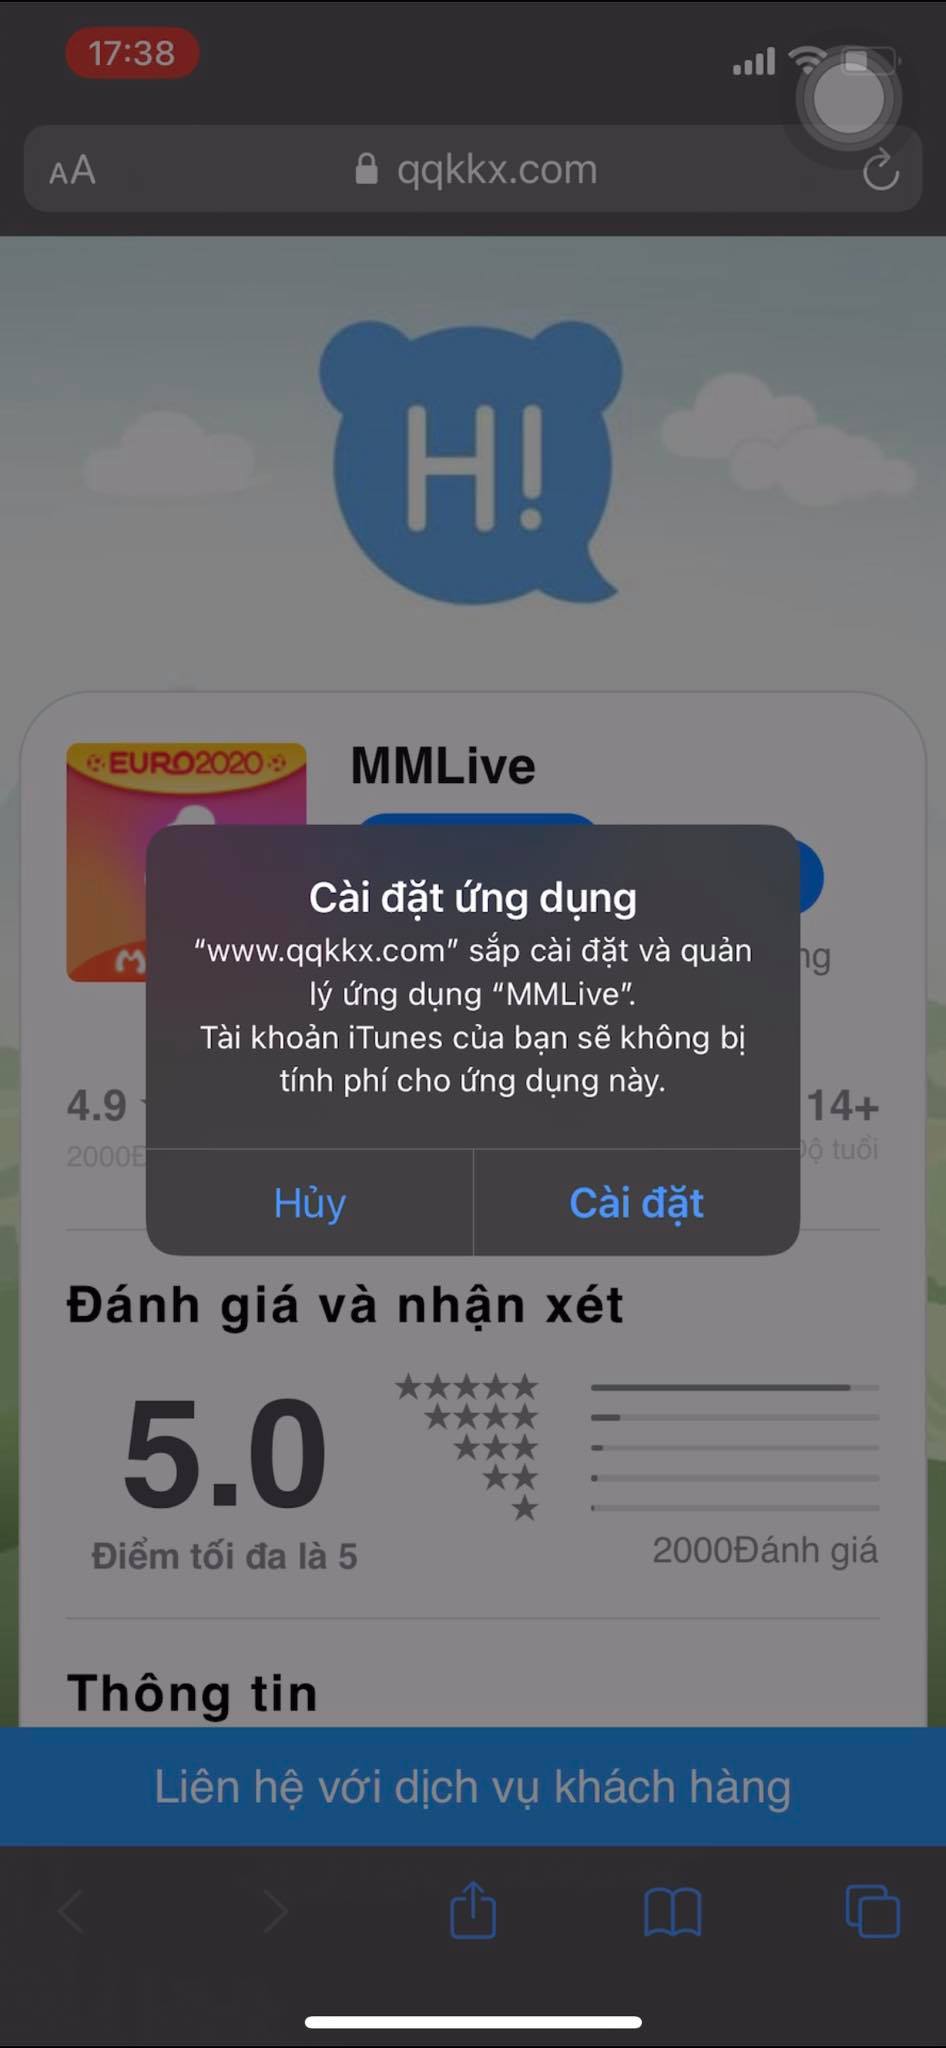 Sau khi chọn tin cậy bạn vui lòng đợi 2-3 giây sẽ hiện thị thông báo cài đặt app MMlive